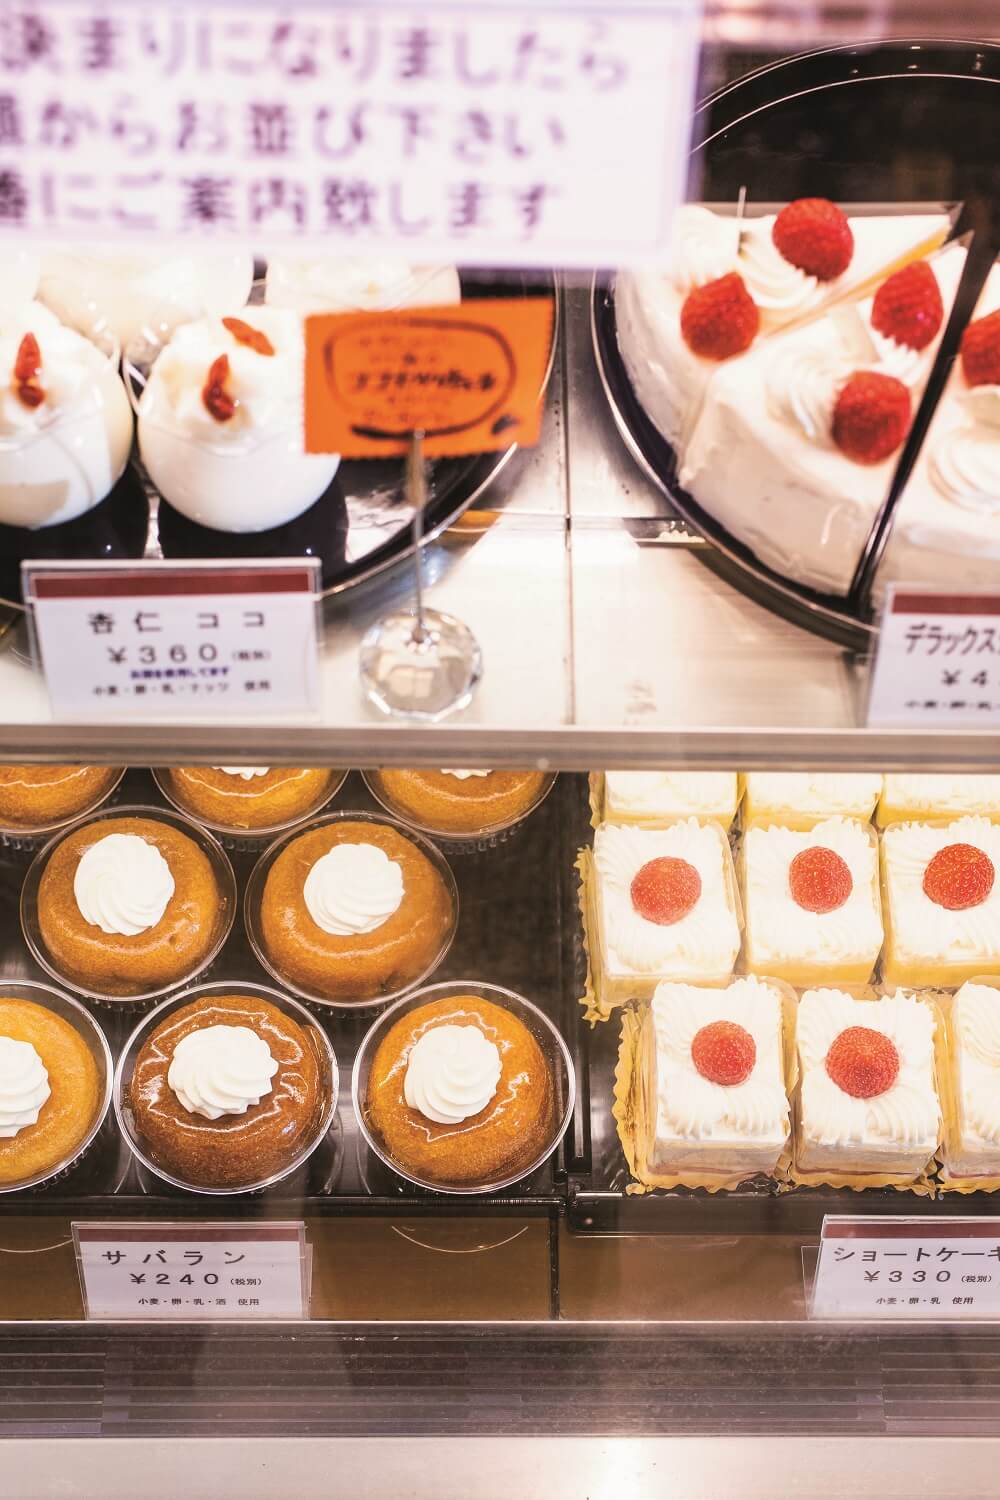 定番人気のサバラン259円から新作のデラックスショートケーキ518円までケーキは約20種類。